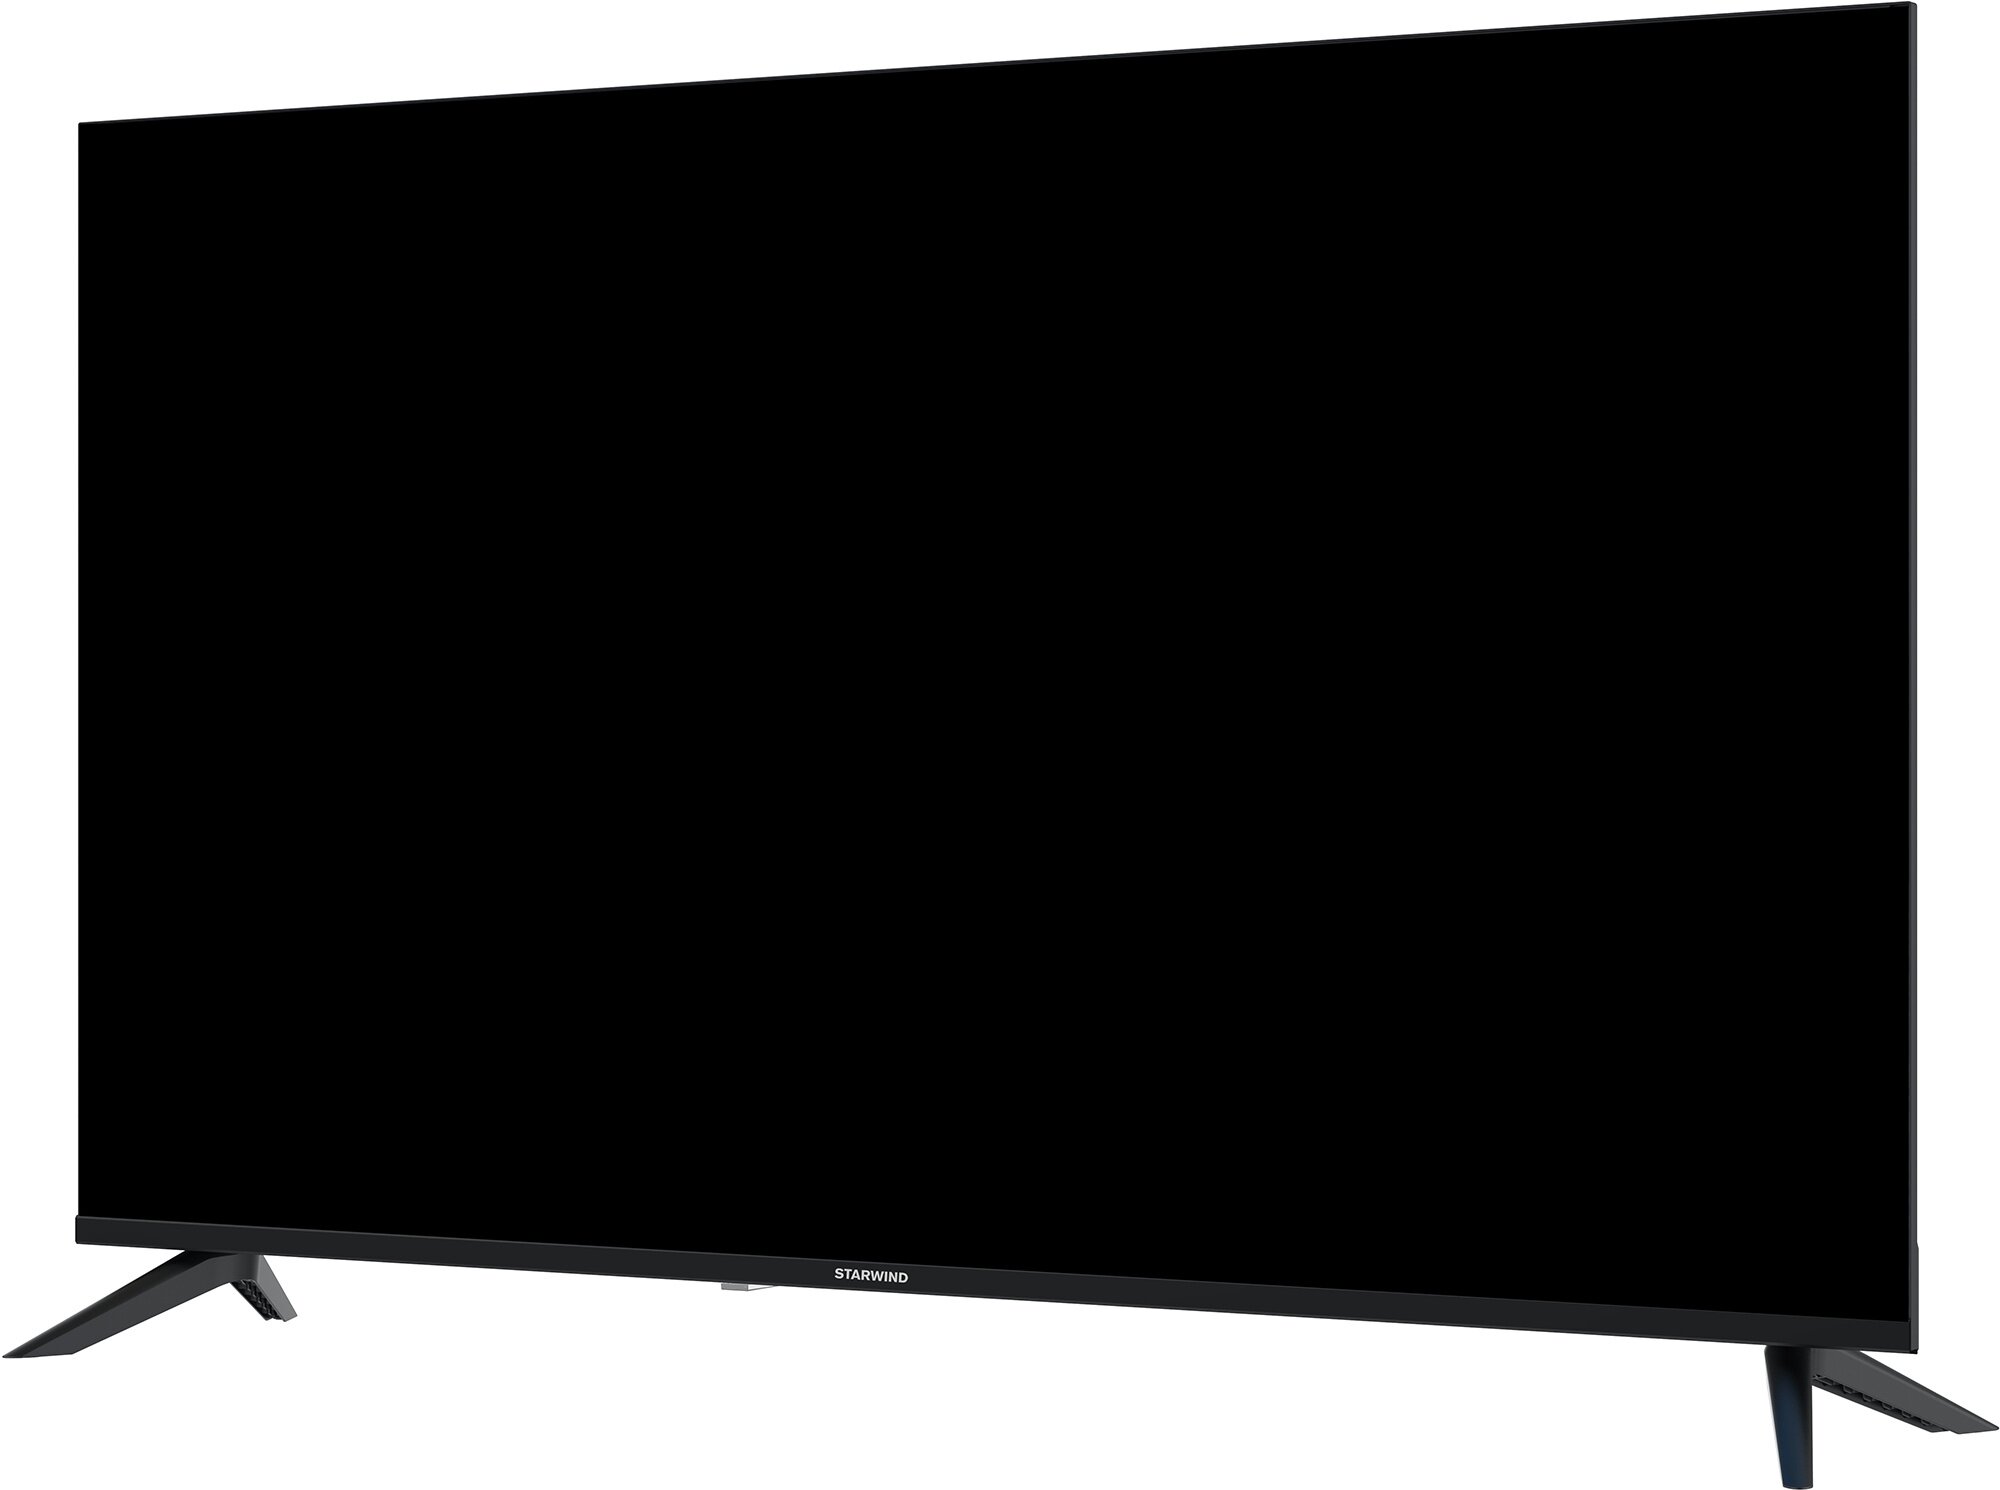 Телевизор Starwind Яндекс.ТВ SW-LED50UG403, 50", LED, 4K Ultra HD, Яндекс.ТВ, черный - фото №4